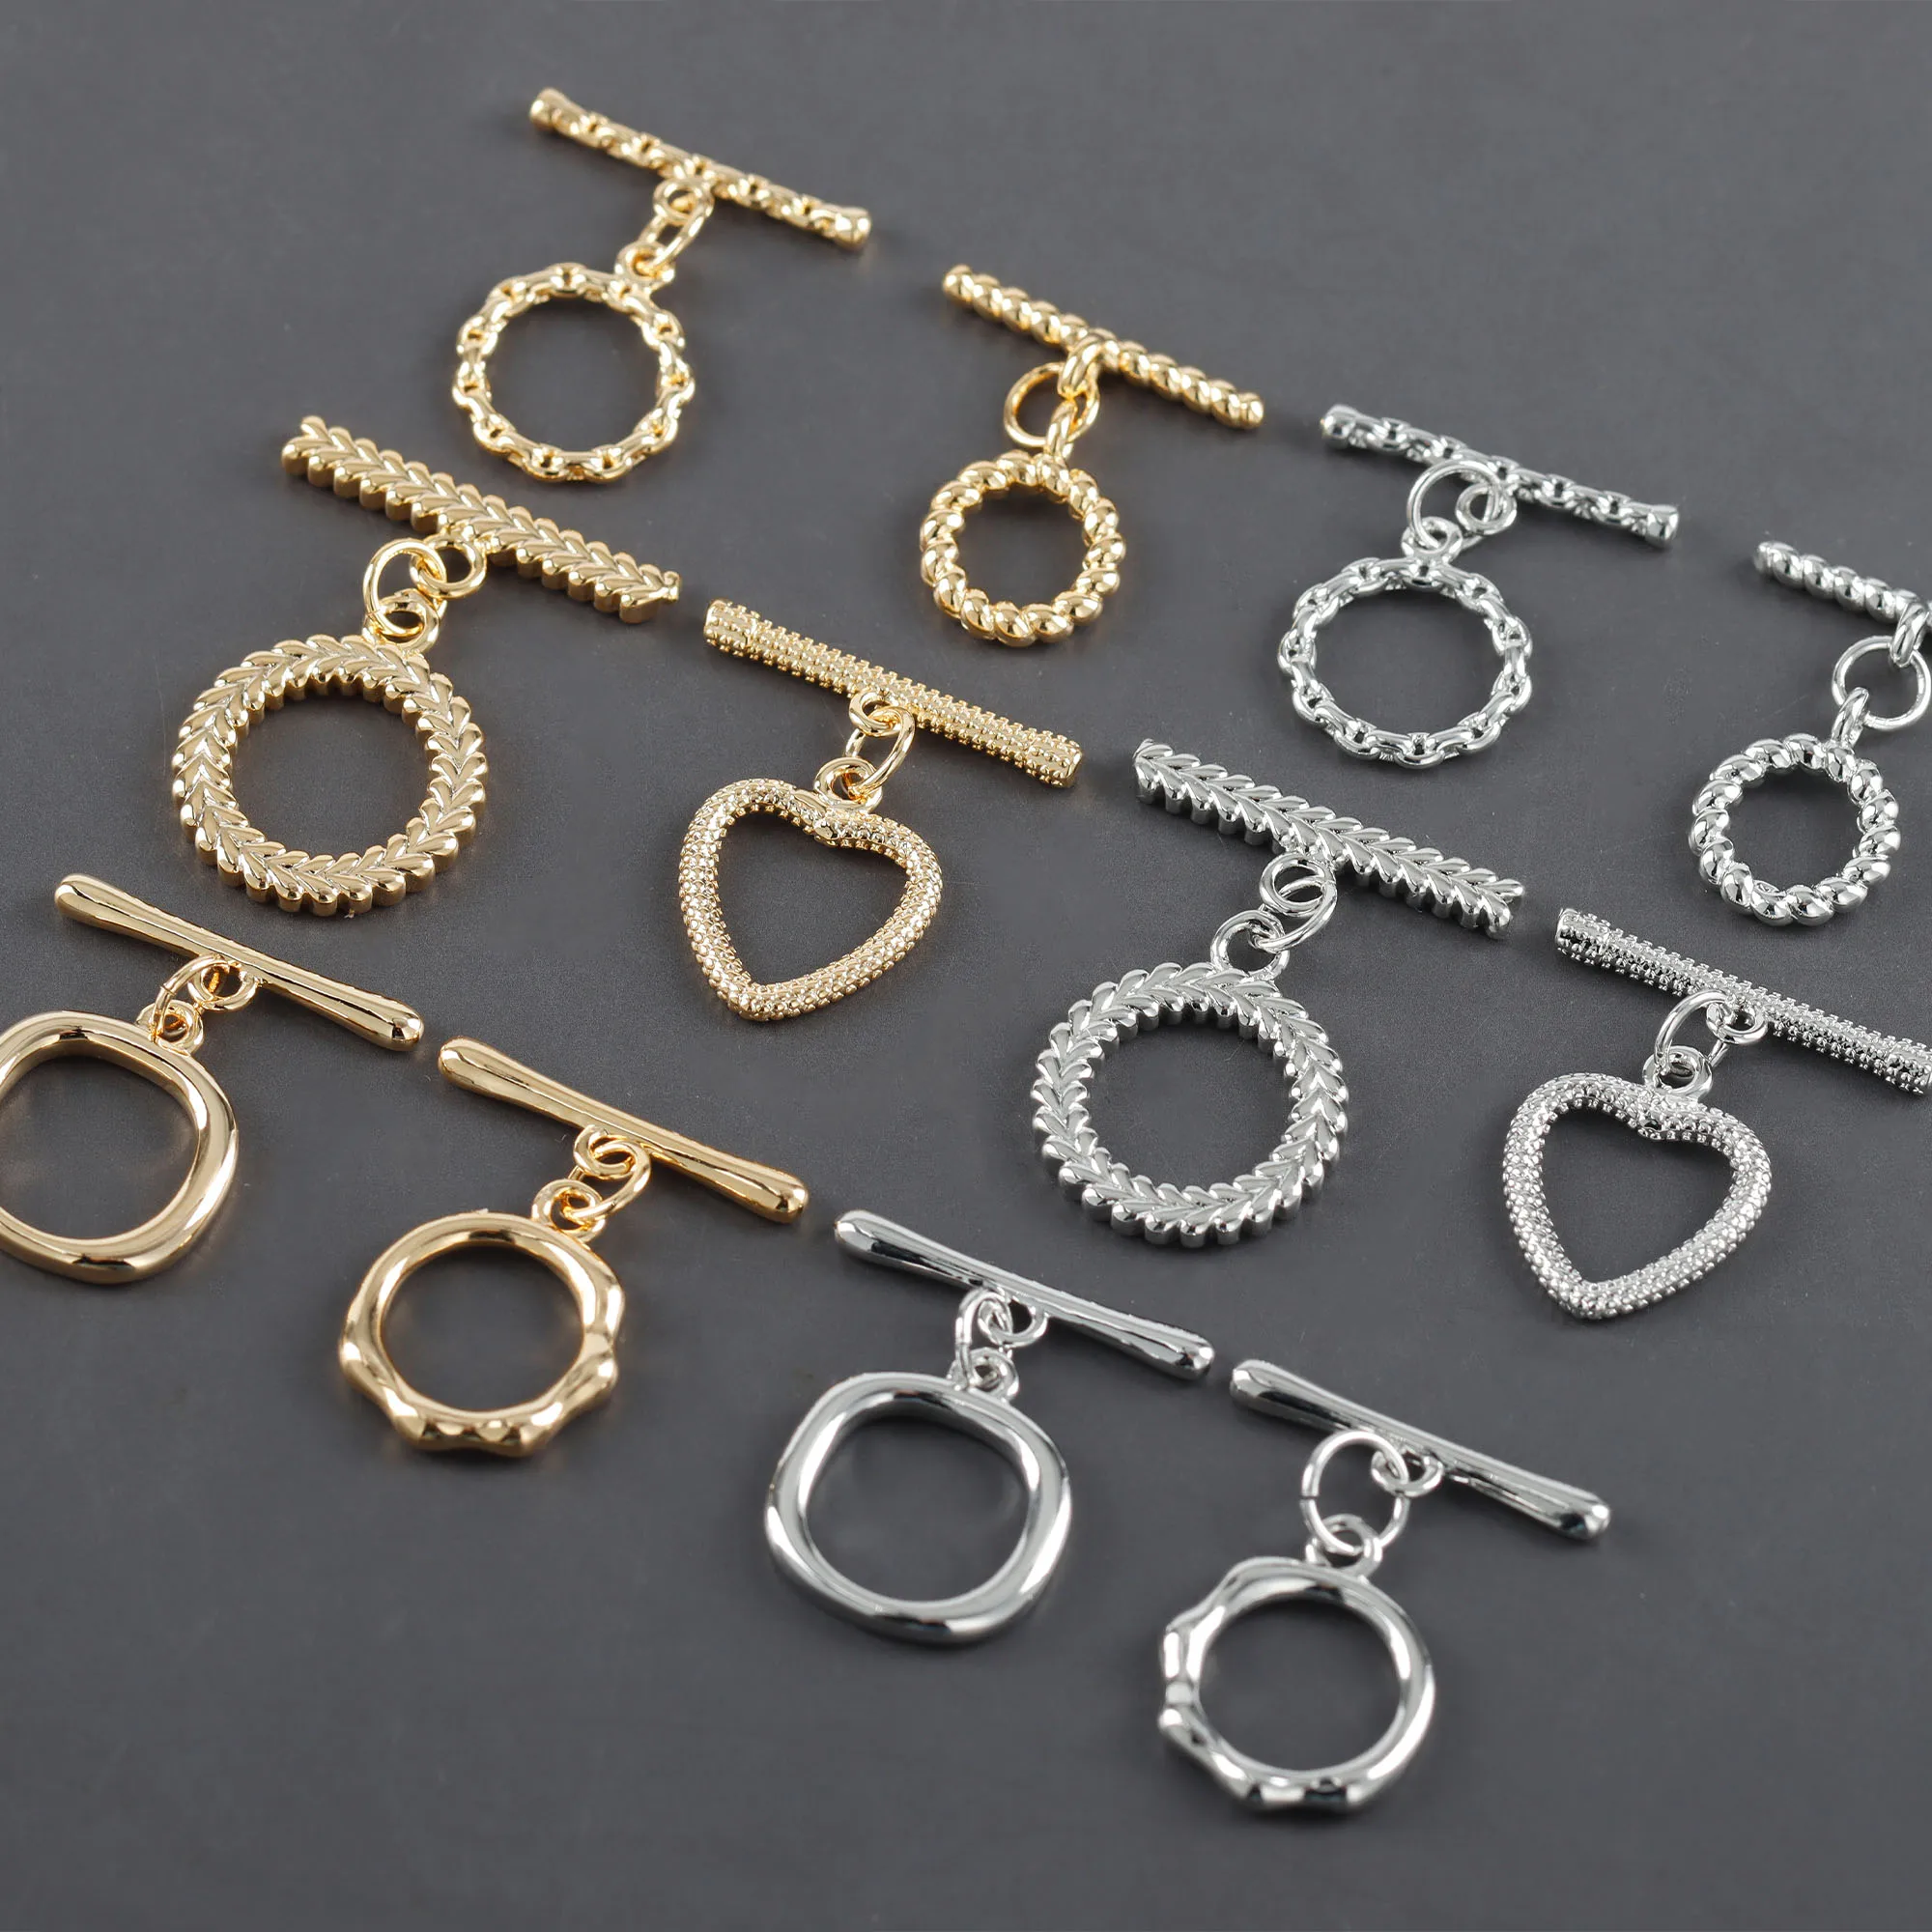 

Wholesale Copper Metal OT Clasps Diy Bracelet Necklace Connectors Jewelry Making Accessories M1126 10pcs/lot, Gold,silver